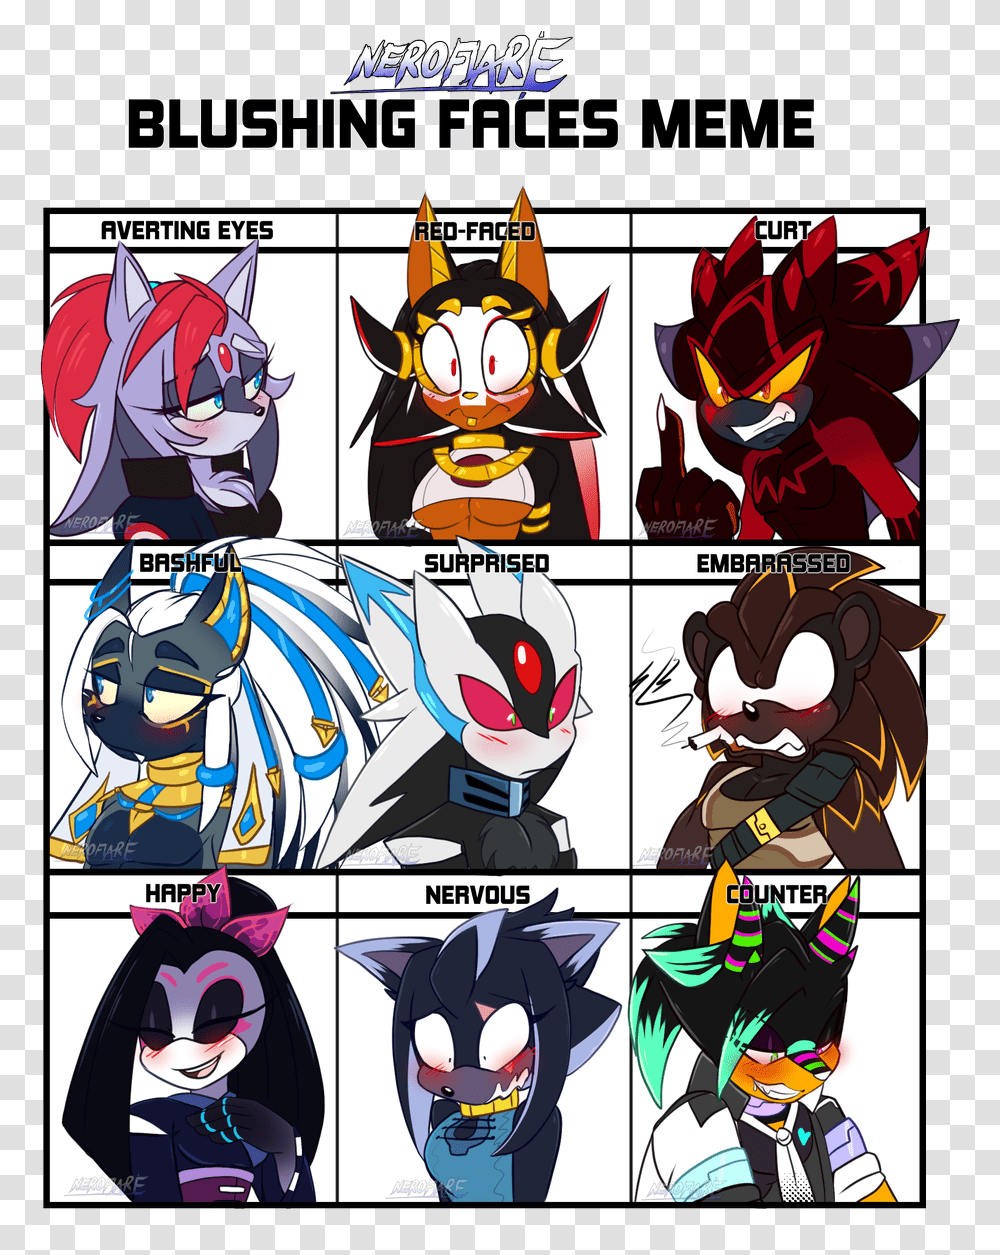 Blushingmeme Hashtag Blushing Faces Meme Sonic, Comics, Book, Manga, Poster Transparent Png